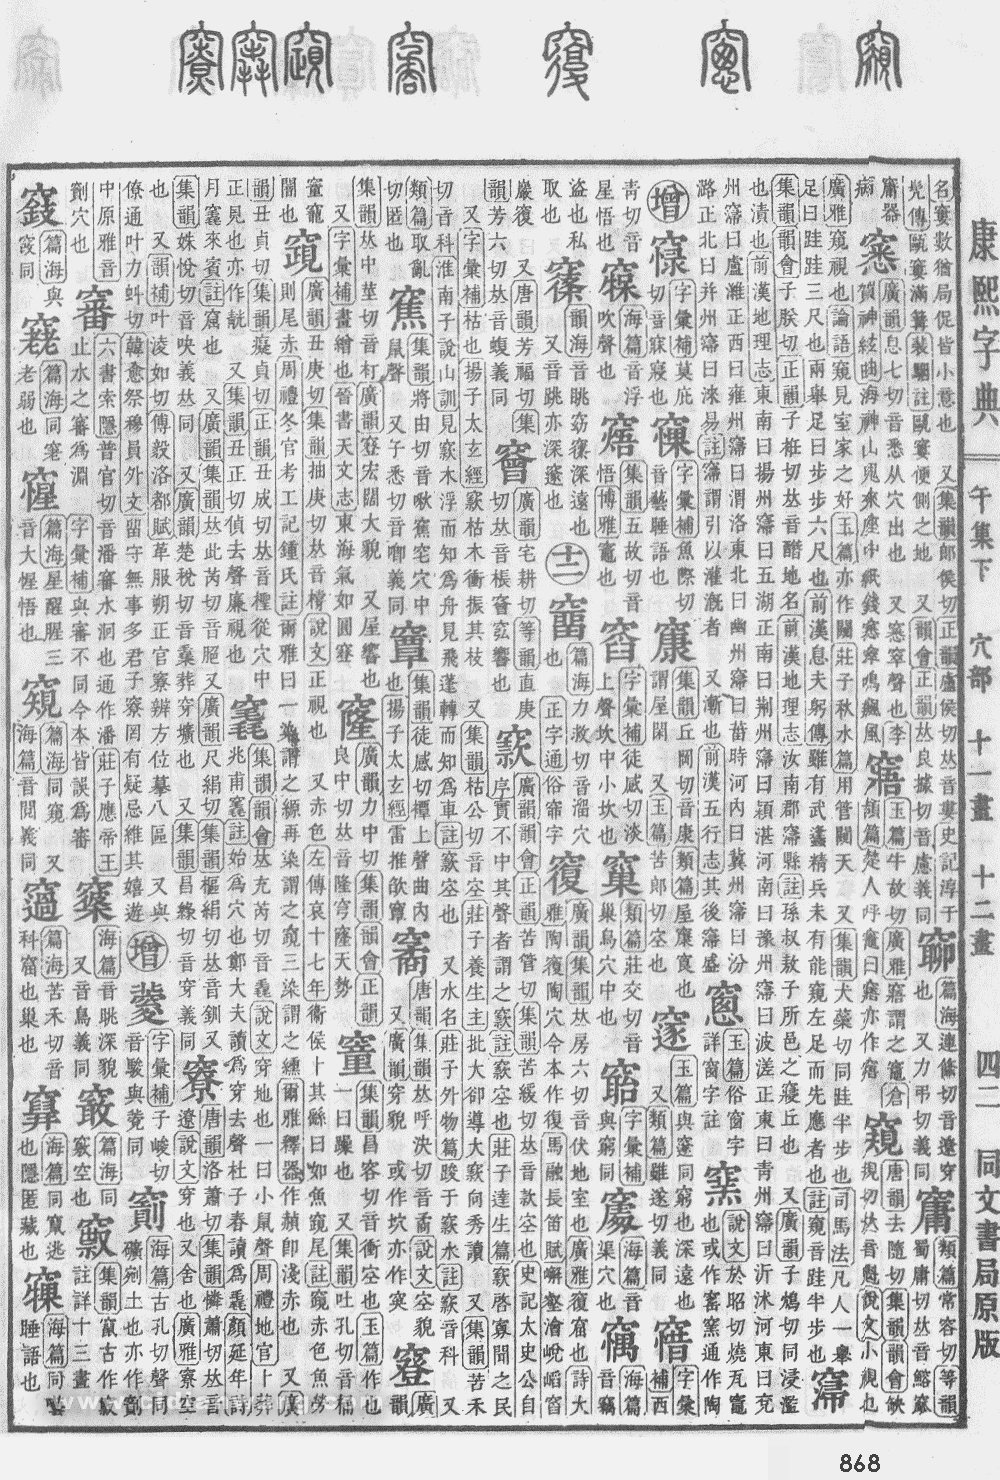 康熙字典掃描版第868頁